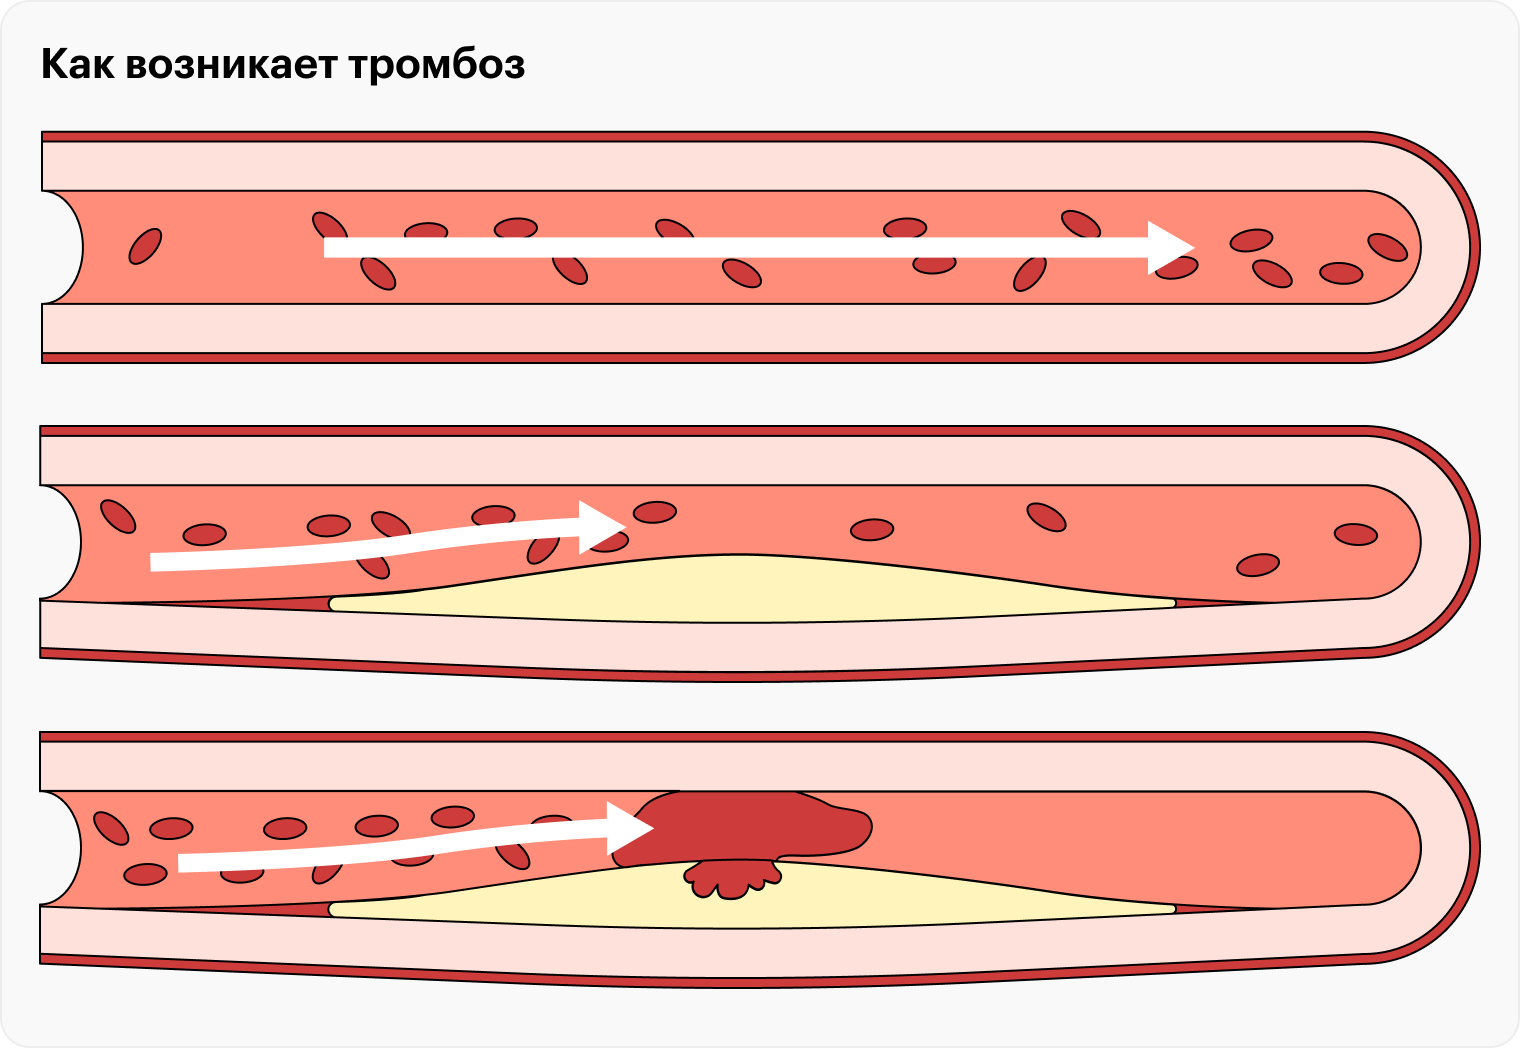 Атеросклеротические бляшки могут разрушаться, тогда содержимое попадает в кровь, что приводит к тромбозу